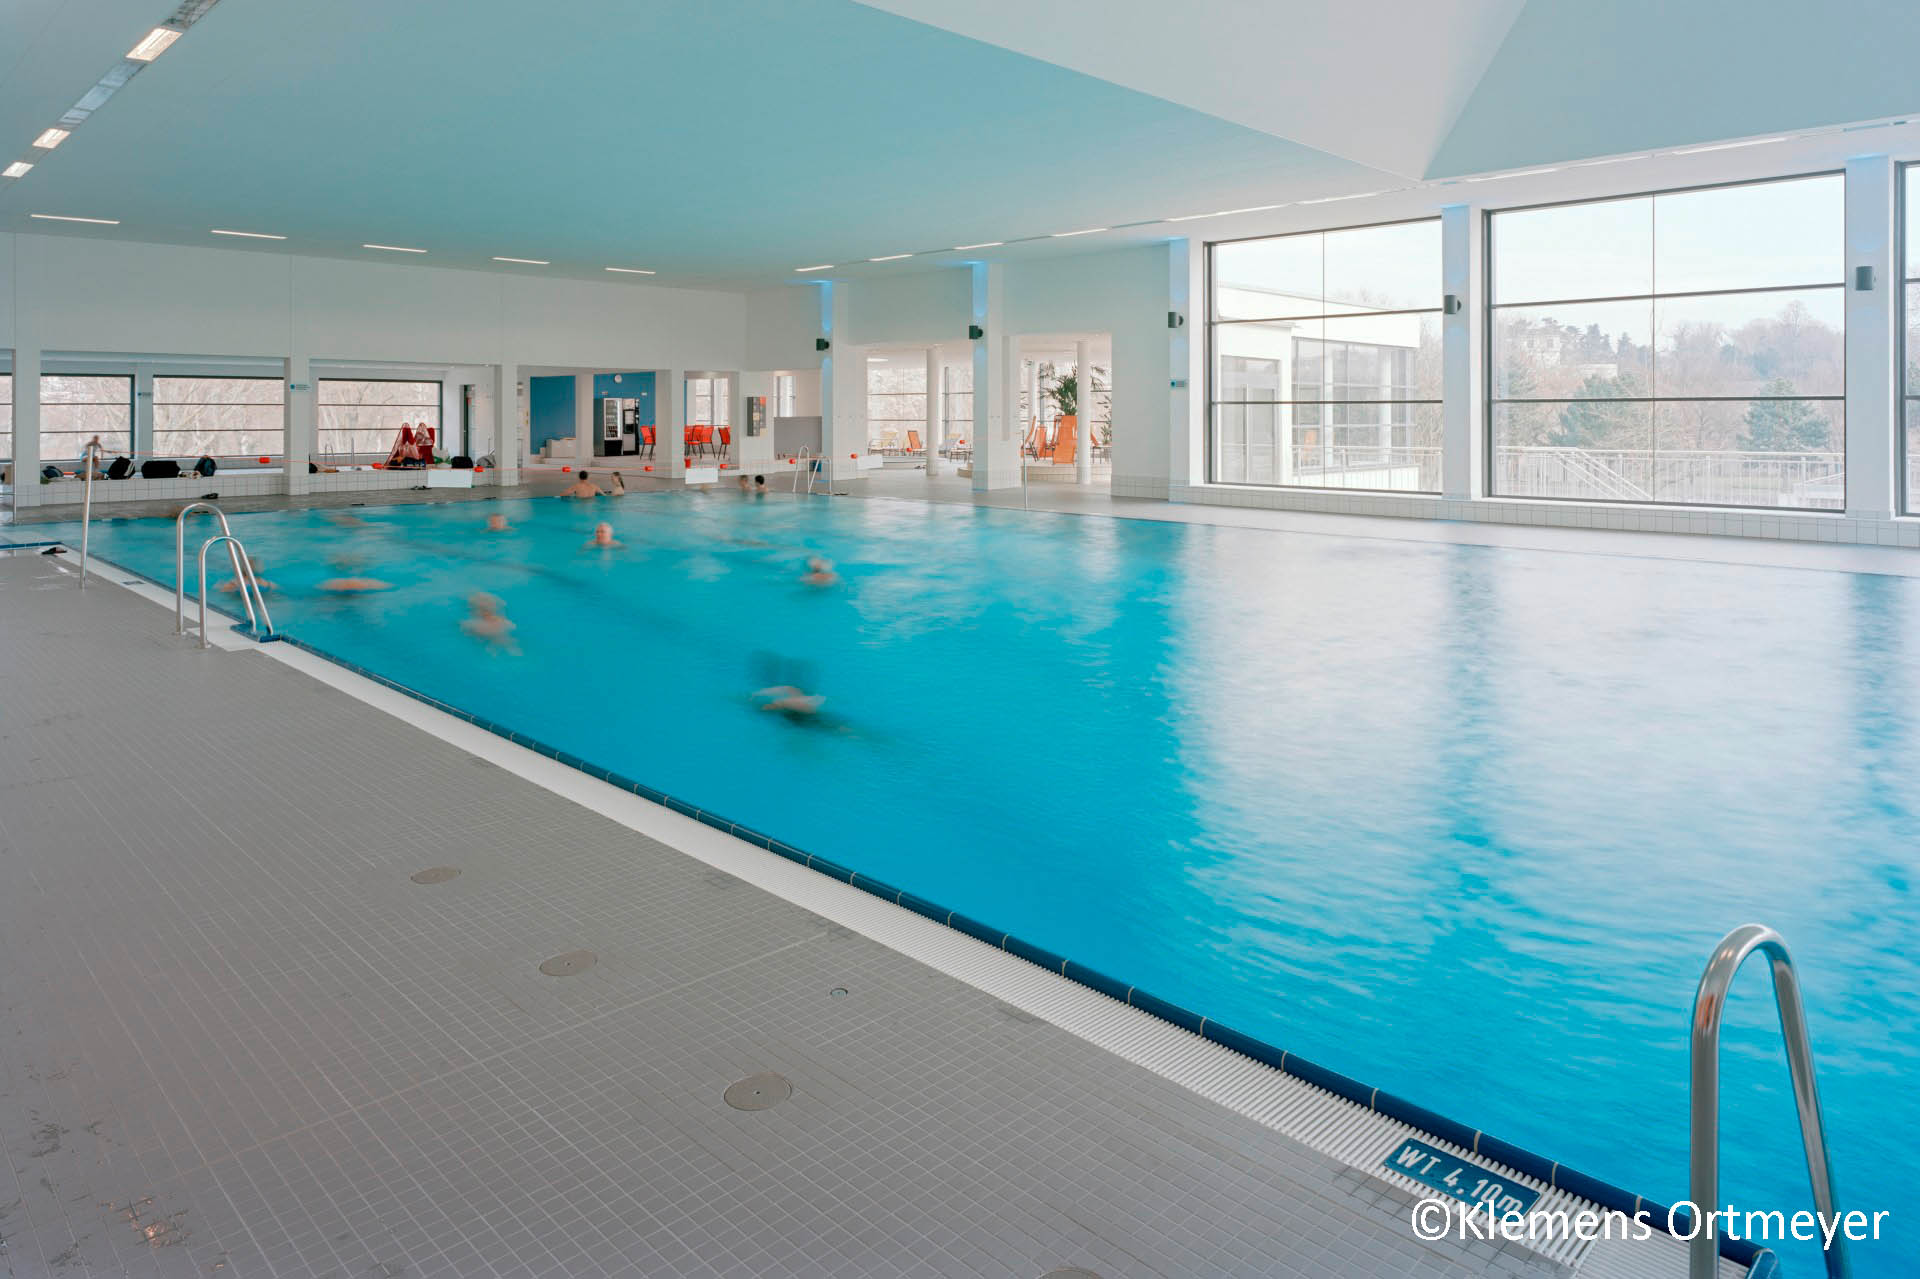 Aschaffenburg indoor pool - Steuler Pool Linings